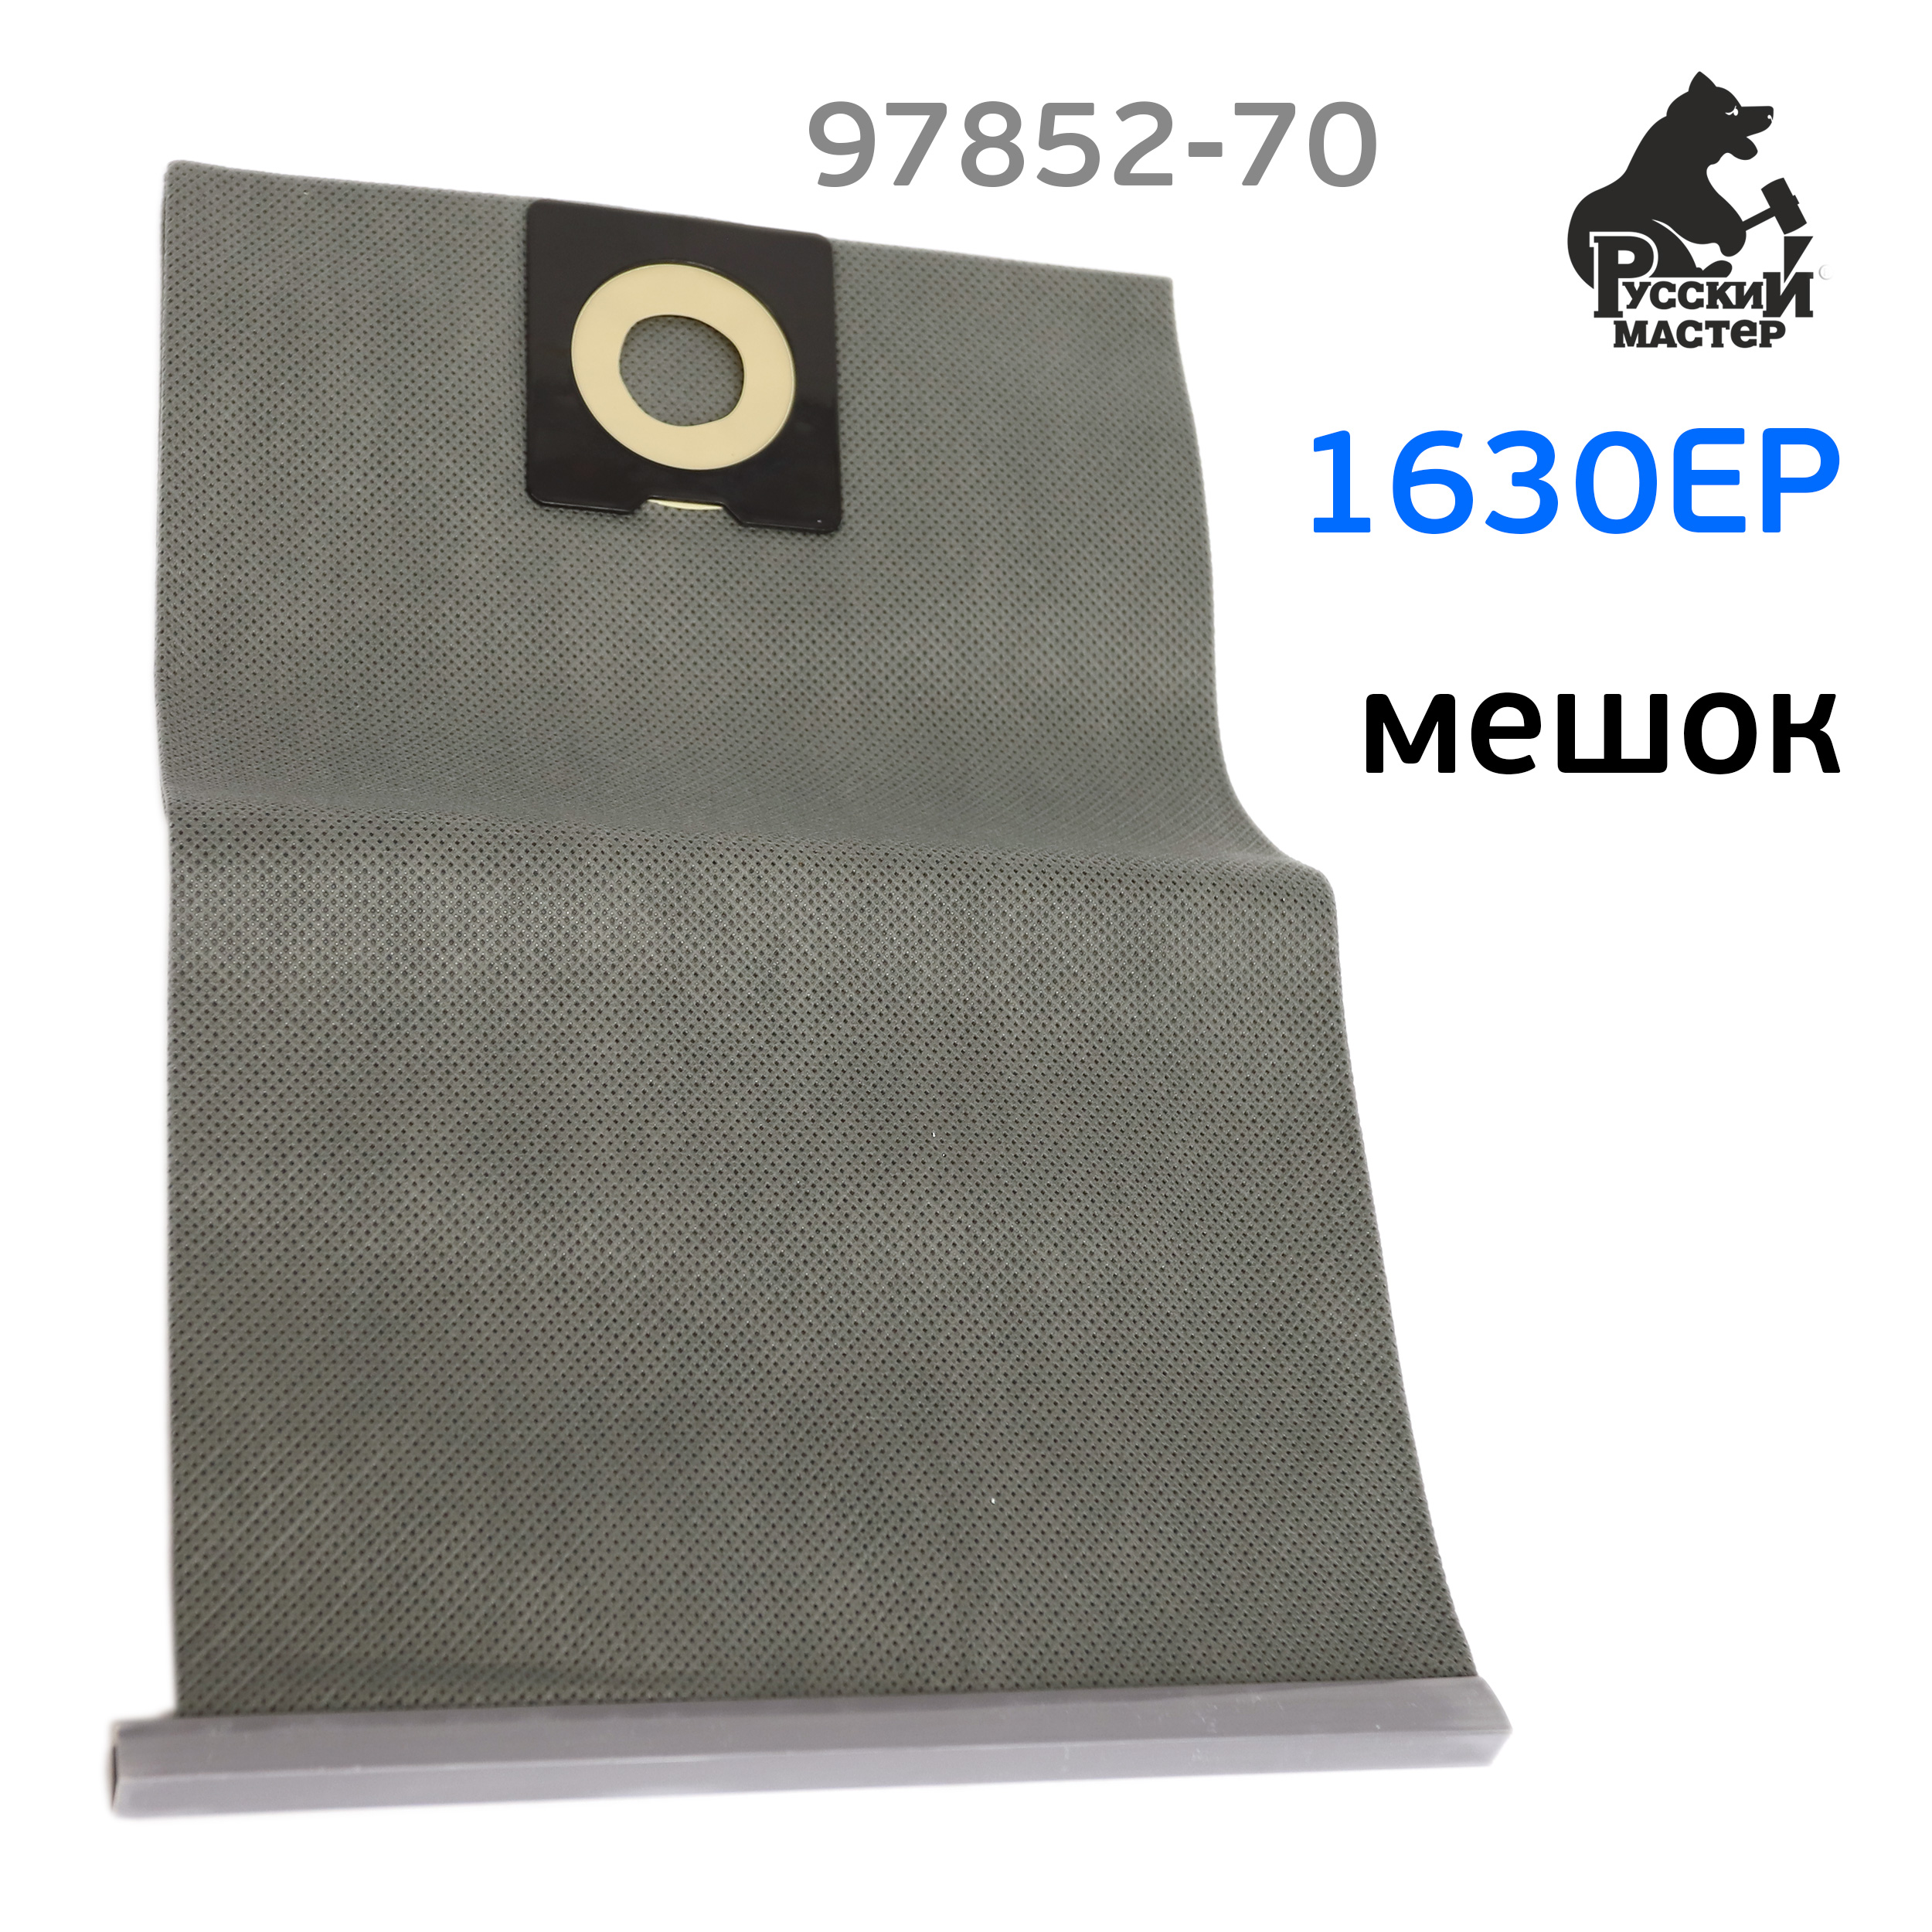 Мешок для пылесоса многоразовый 1630EP (1шт) нетканный Русский мастер .